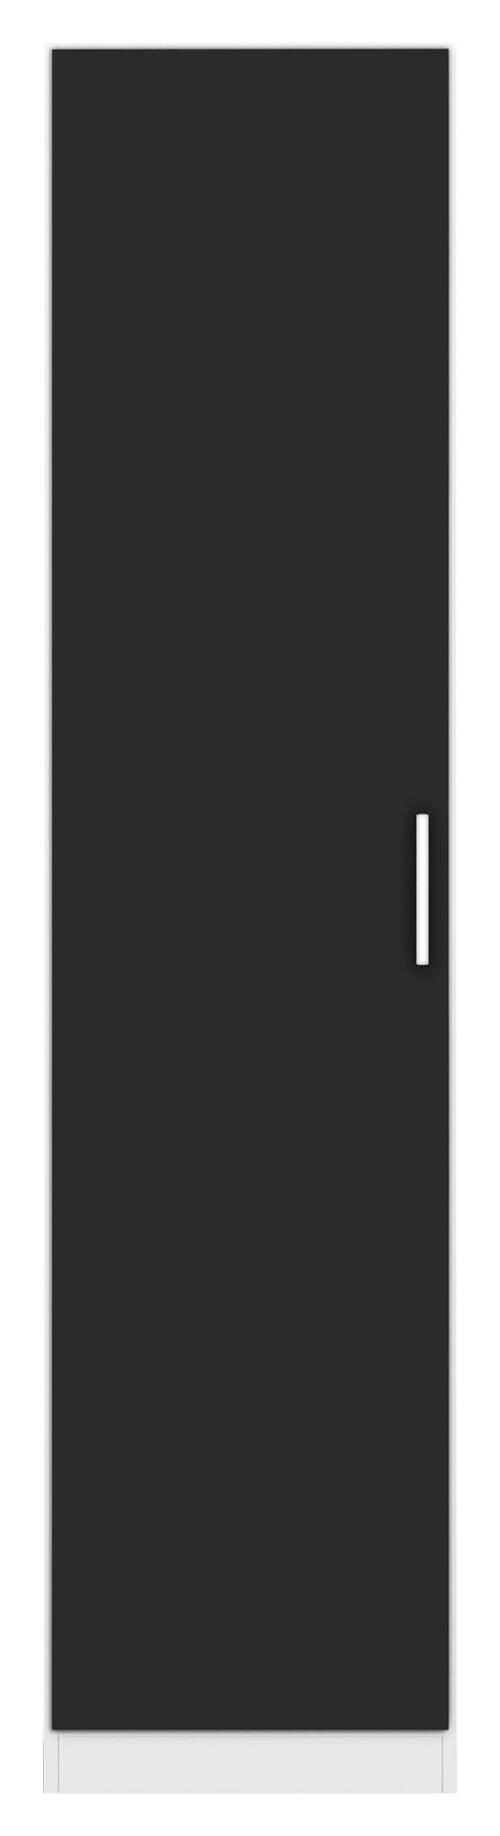 DREHTÜRENSCHRANK  in Grau, Weiß  - Chromfarben/Weiß, MODERN, Holzwerkstoff/Kunststoff (47/197/54cm) - Rauch Möbel